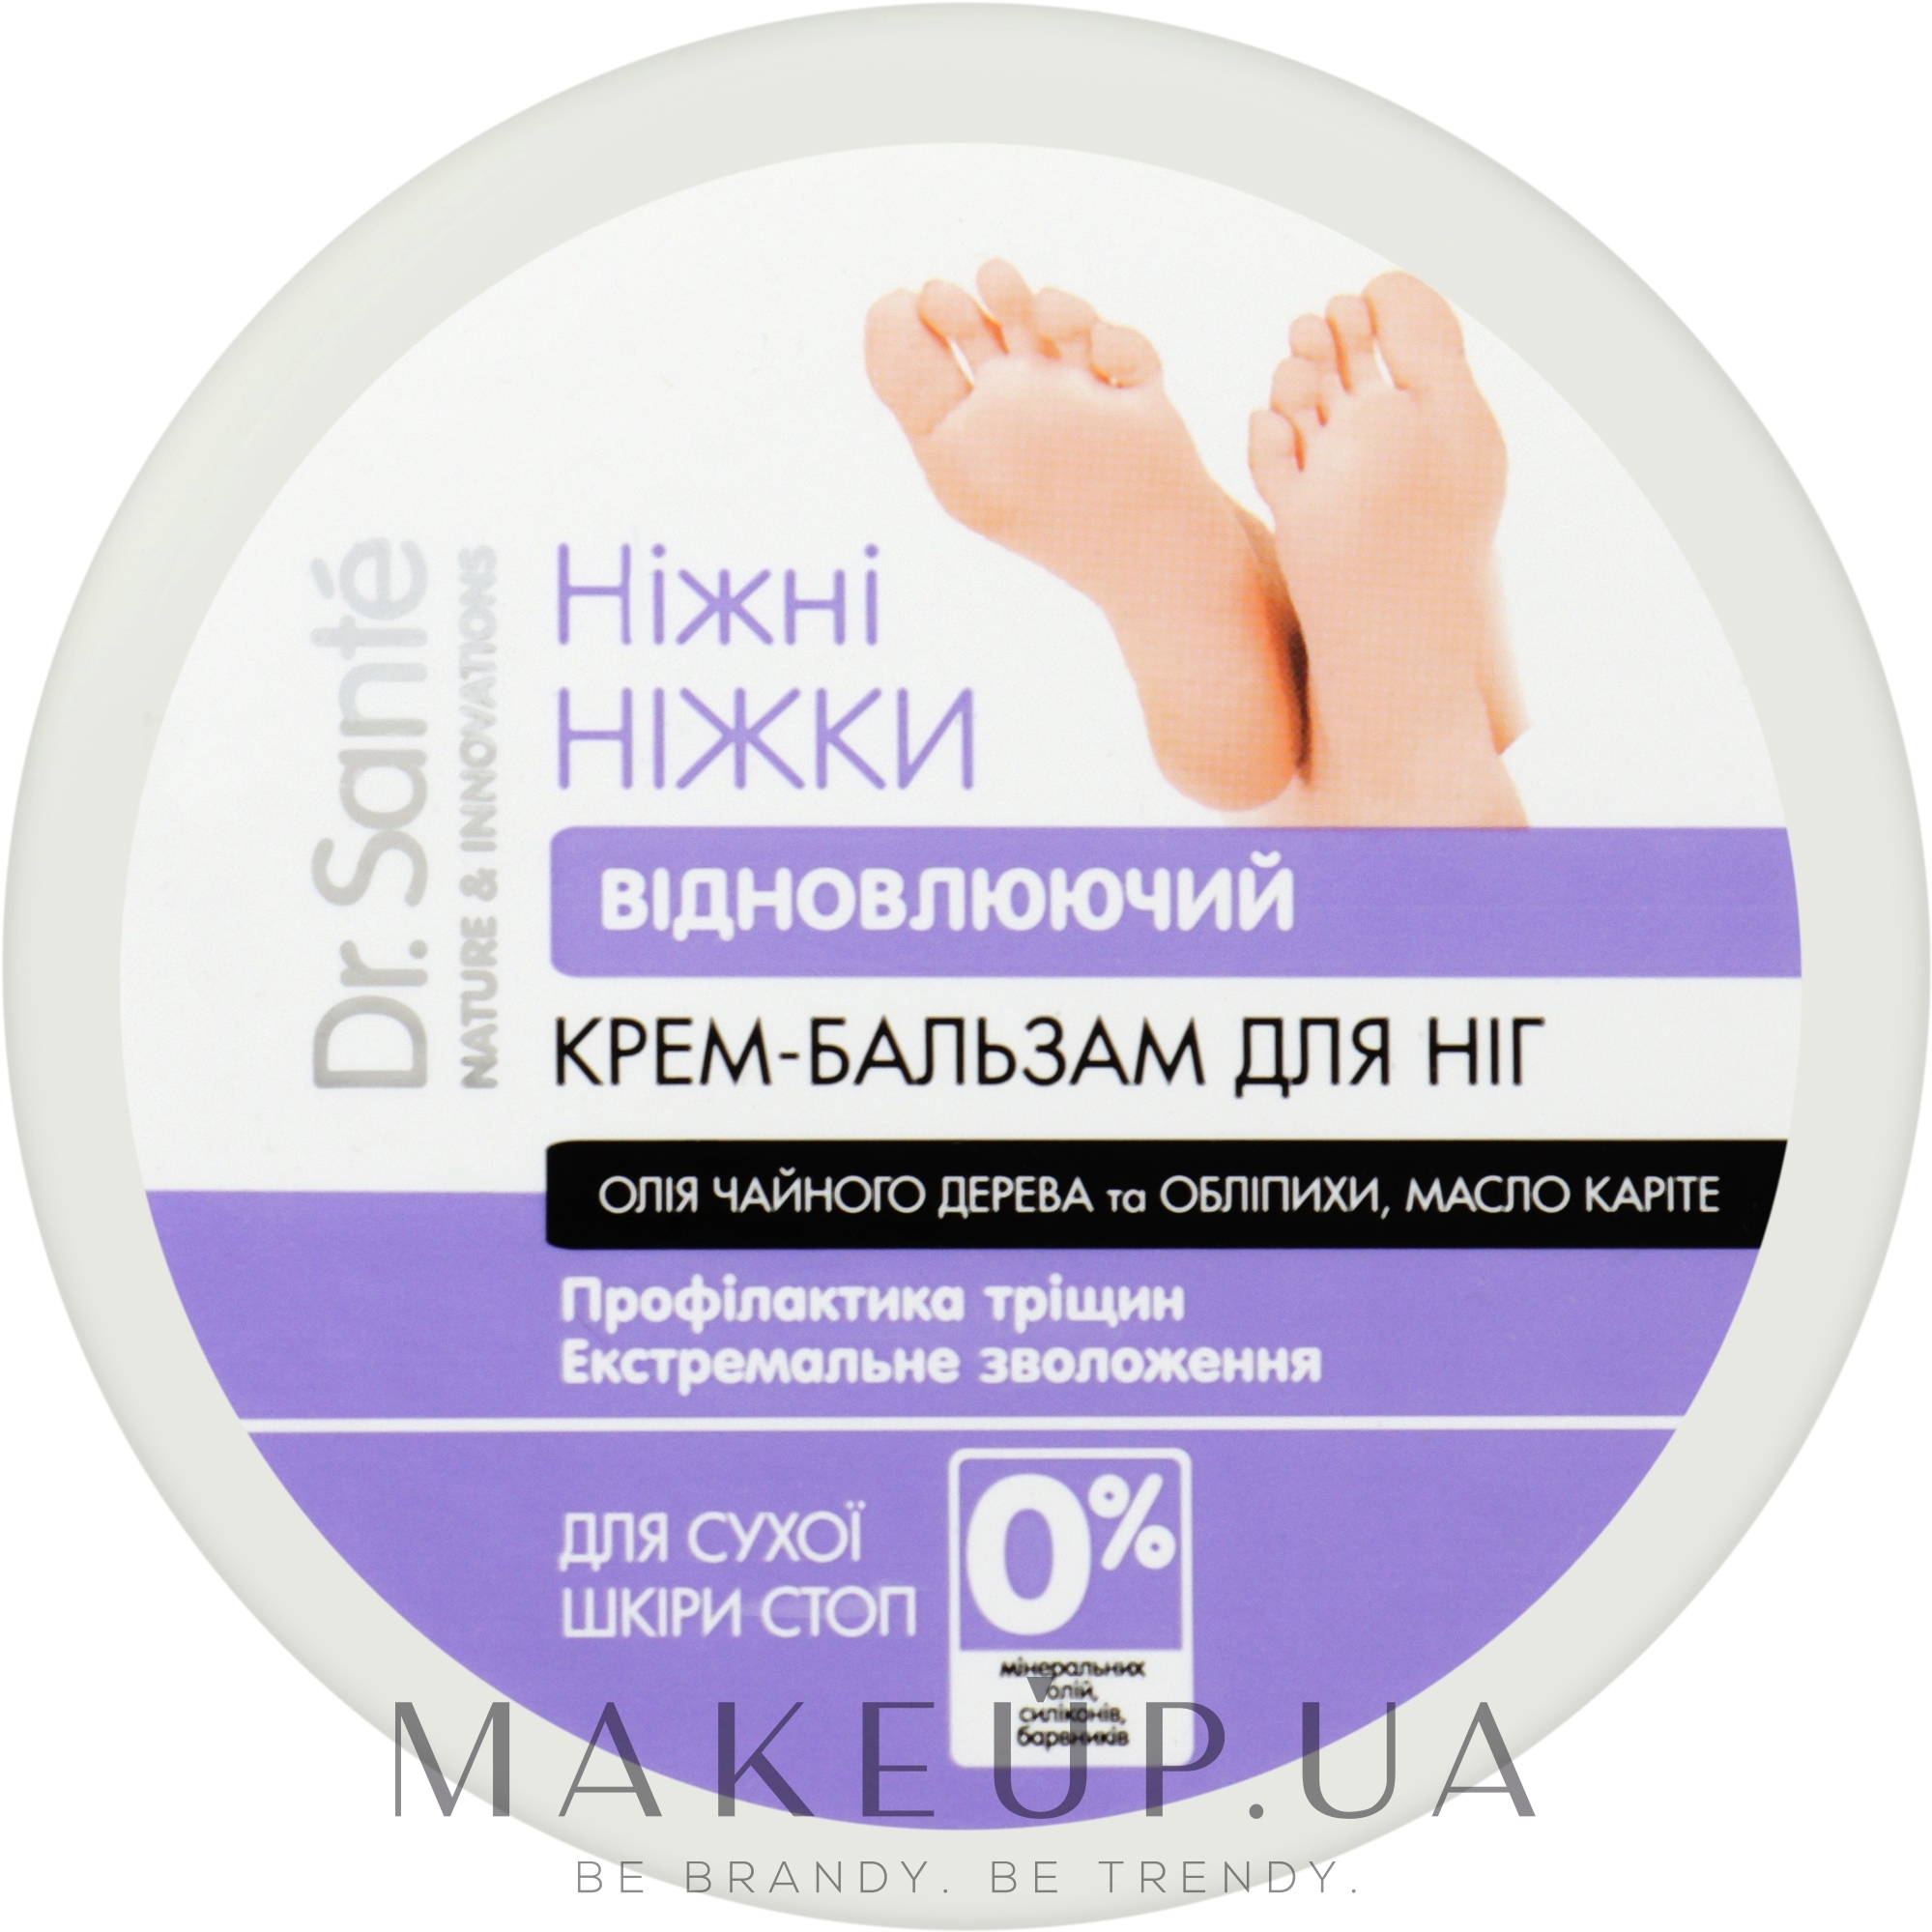 Лучшие средства для защиты кожи и лечения трещин на пальцах рук - sauna-ernesto.ru